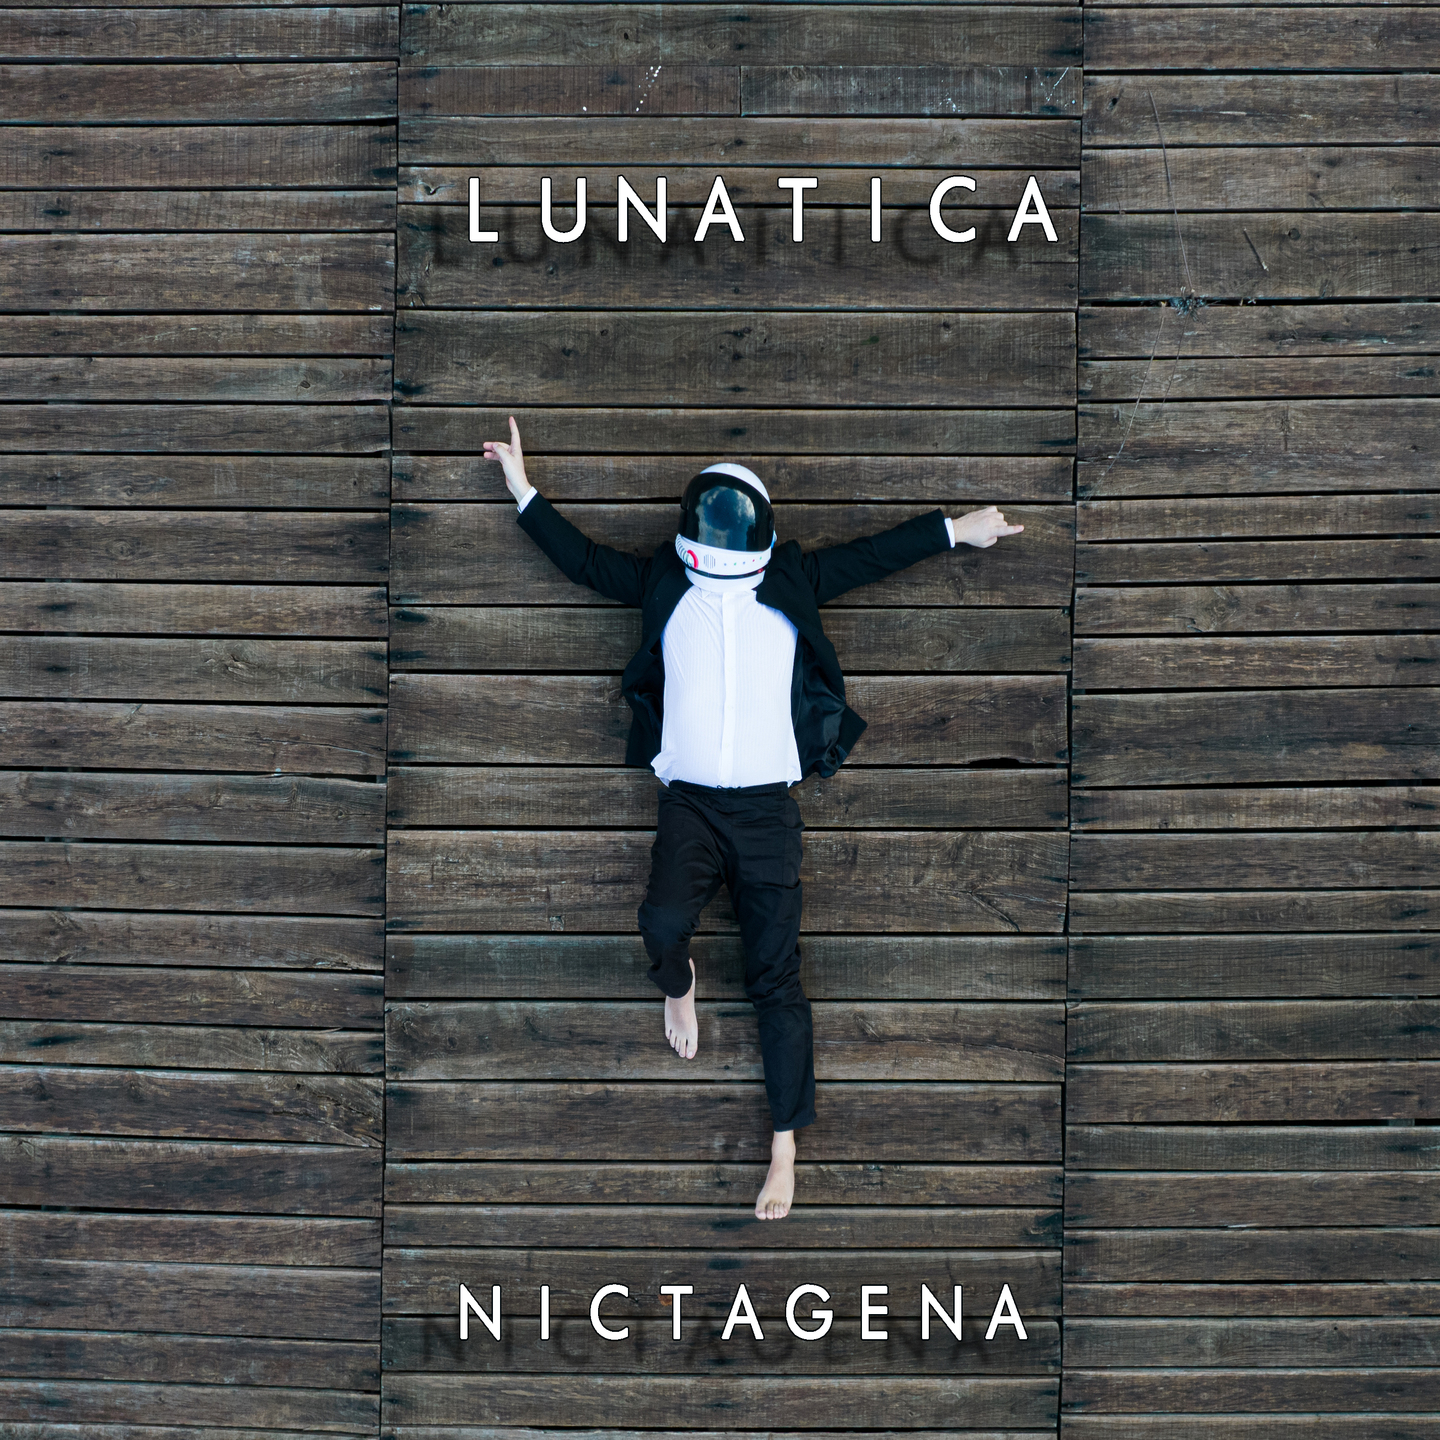 Nictagena – “Lunatica”